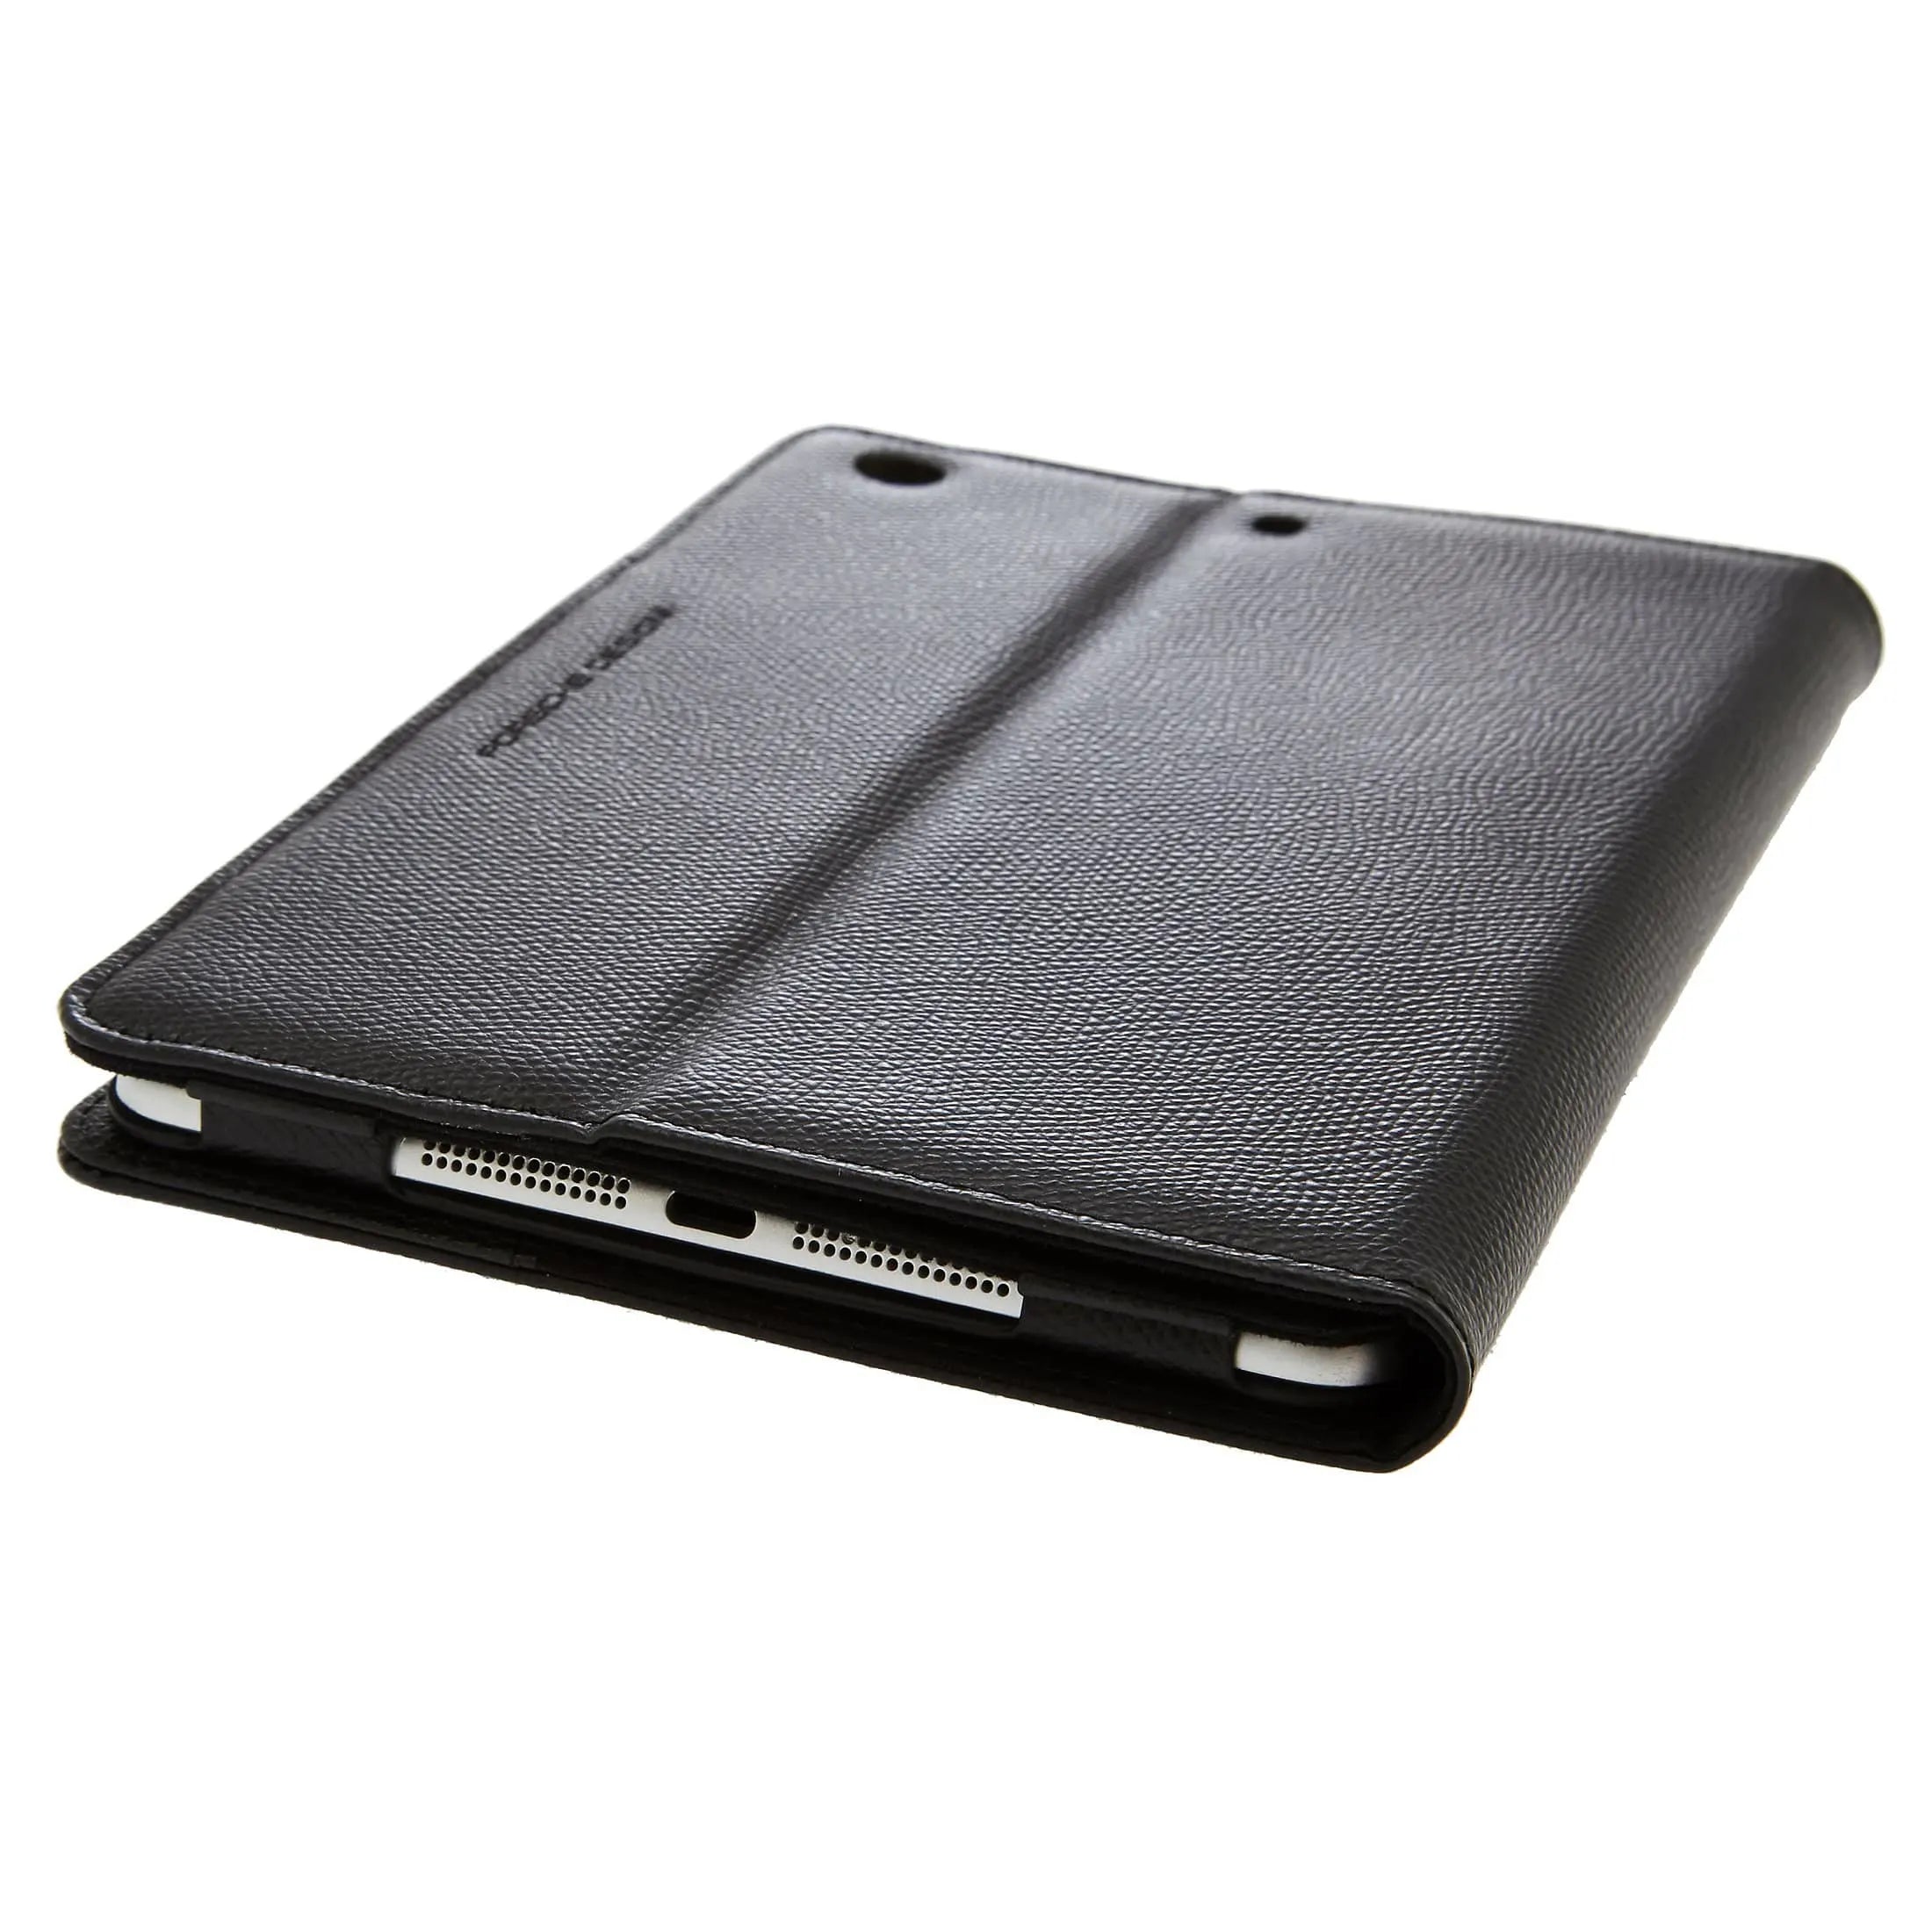 Porsche Design French Classic 3.0 Case for iPad Mini 2 Case 1 20 cm - black